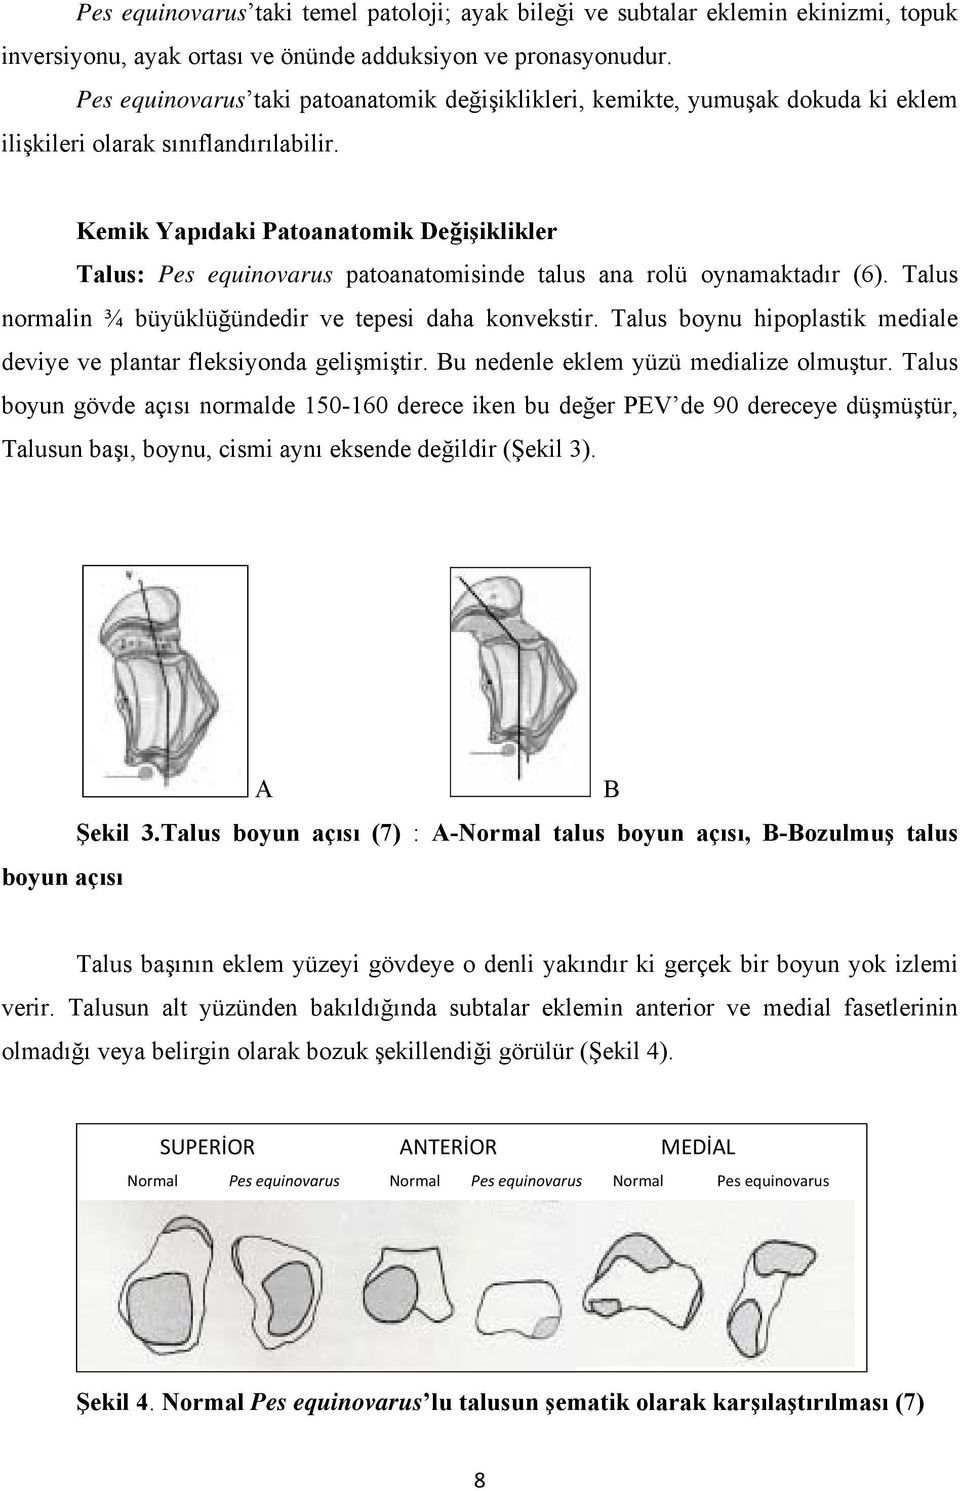 Kemik Yapıdaki Patoanatomik Değişiklikler Talus: Pes equinovarus patoanatomisinde talus ana rolü oynamaktadır (6). Talus normalin ¾ büyüklüğündedir ve tepesi daha konvekstir.